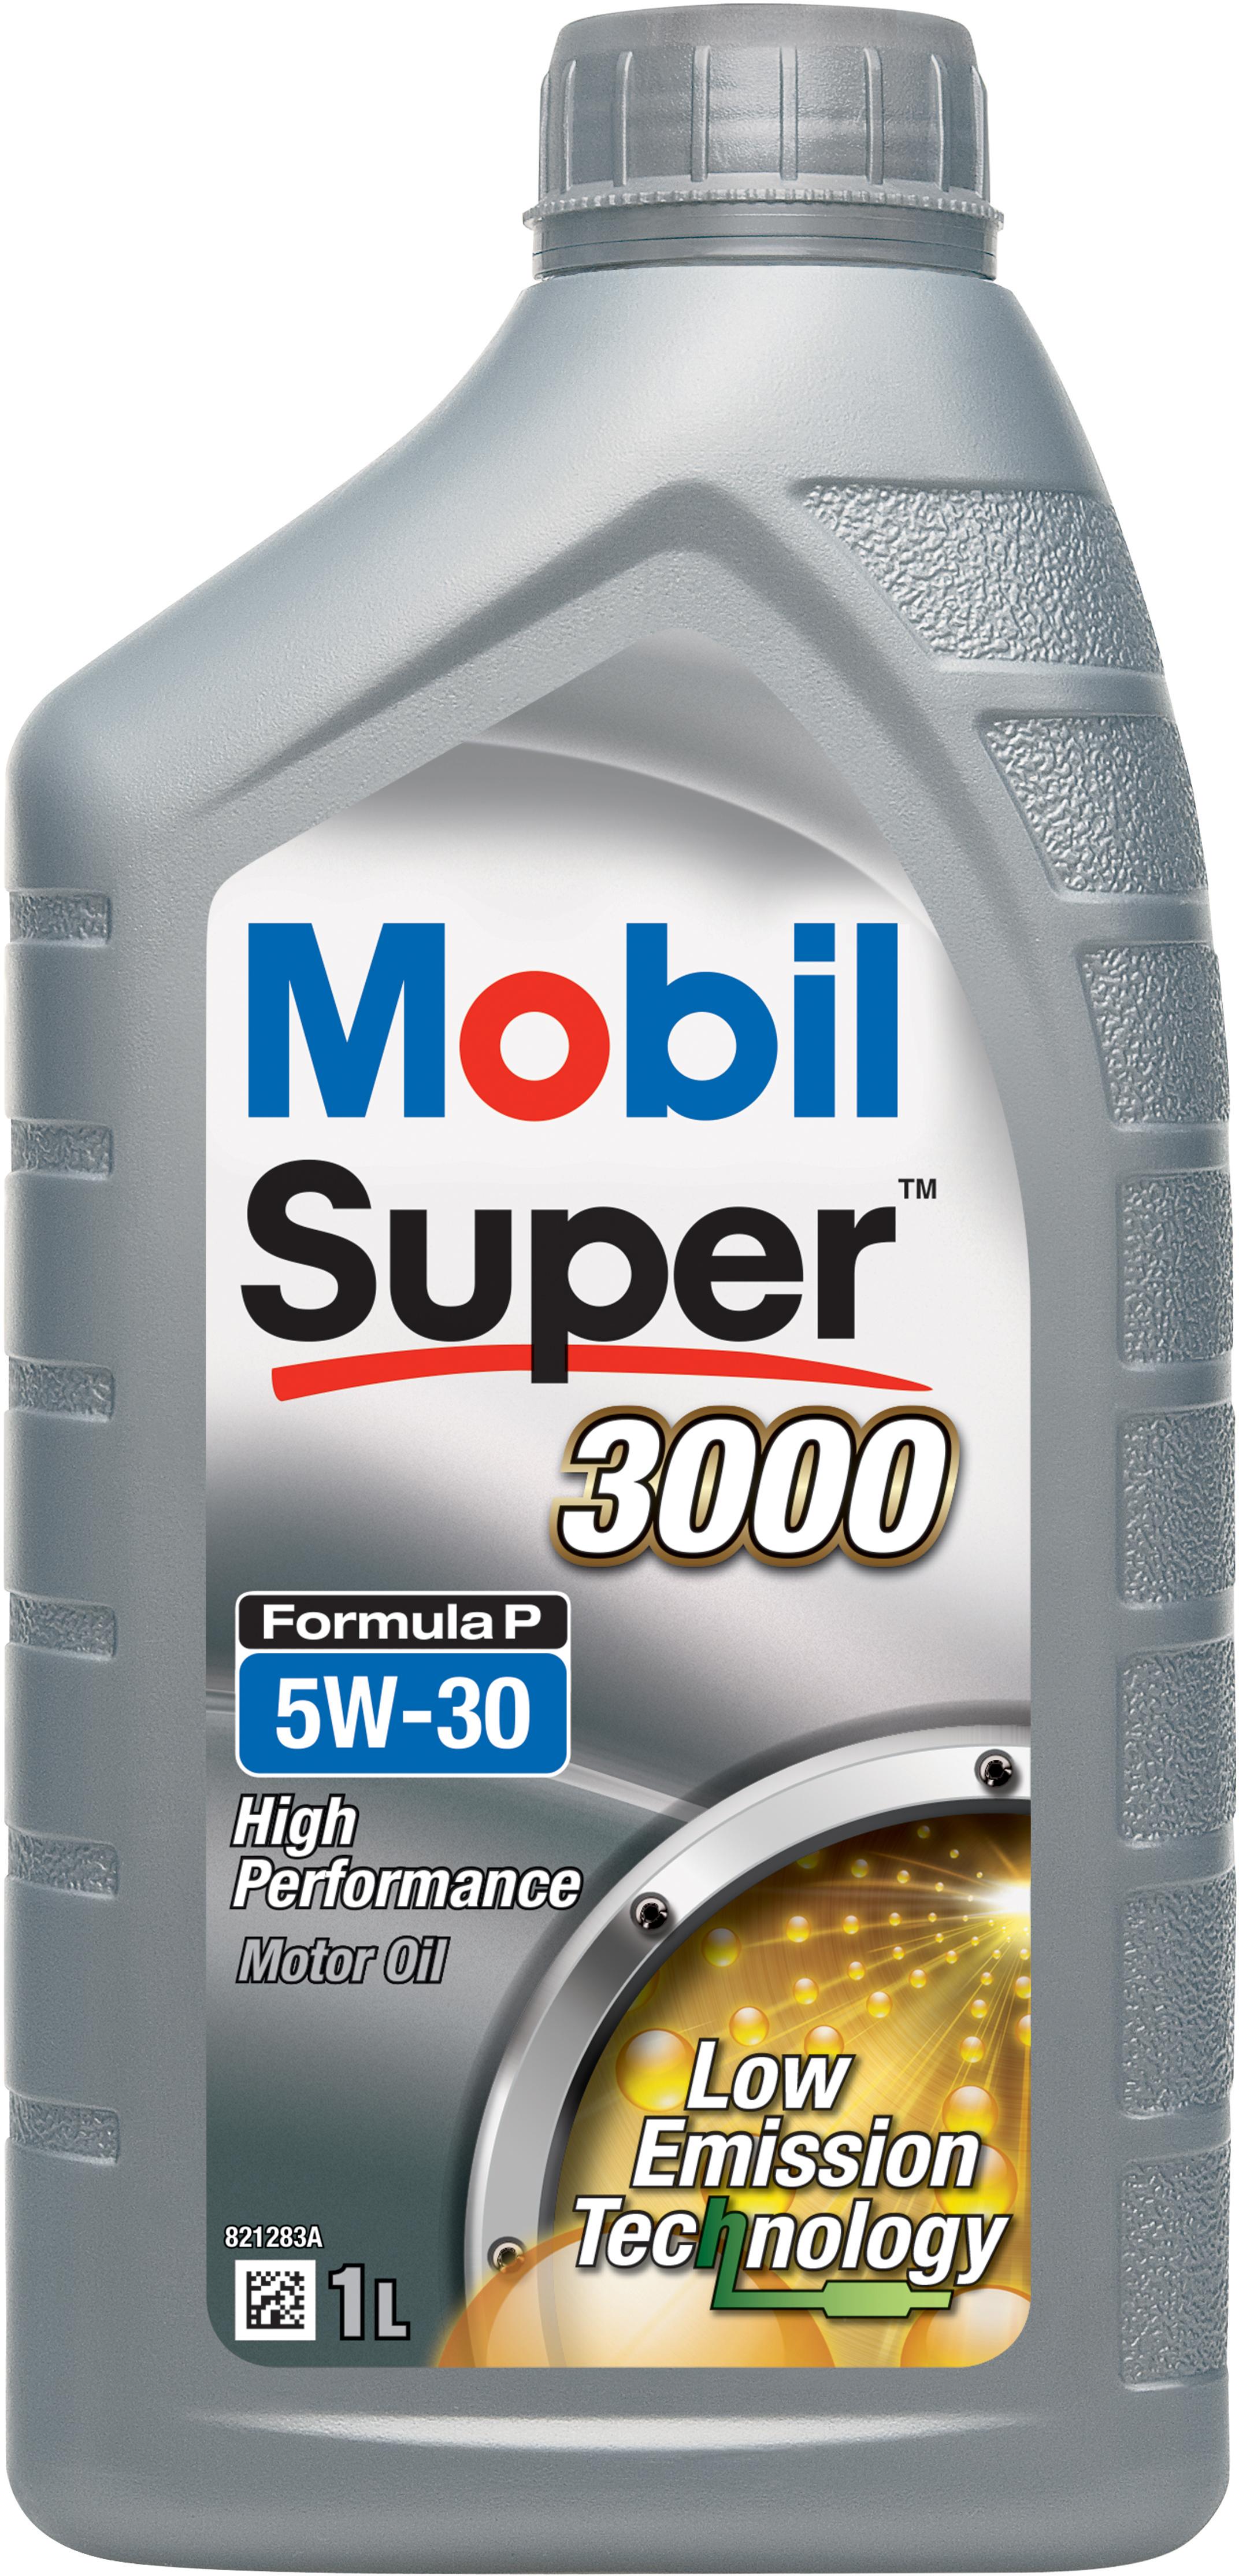 Mobil Super 3000 Formula P 5W30 1L